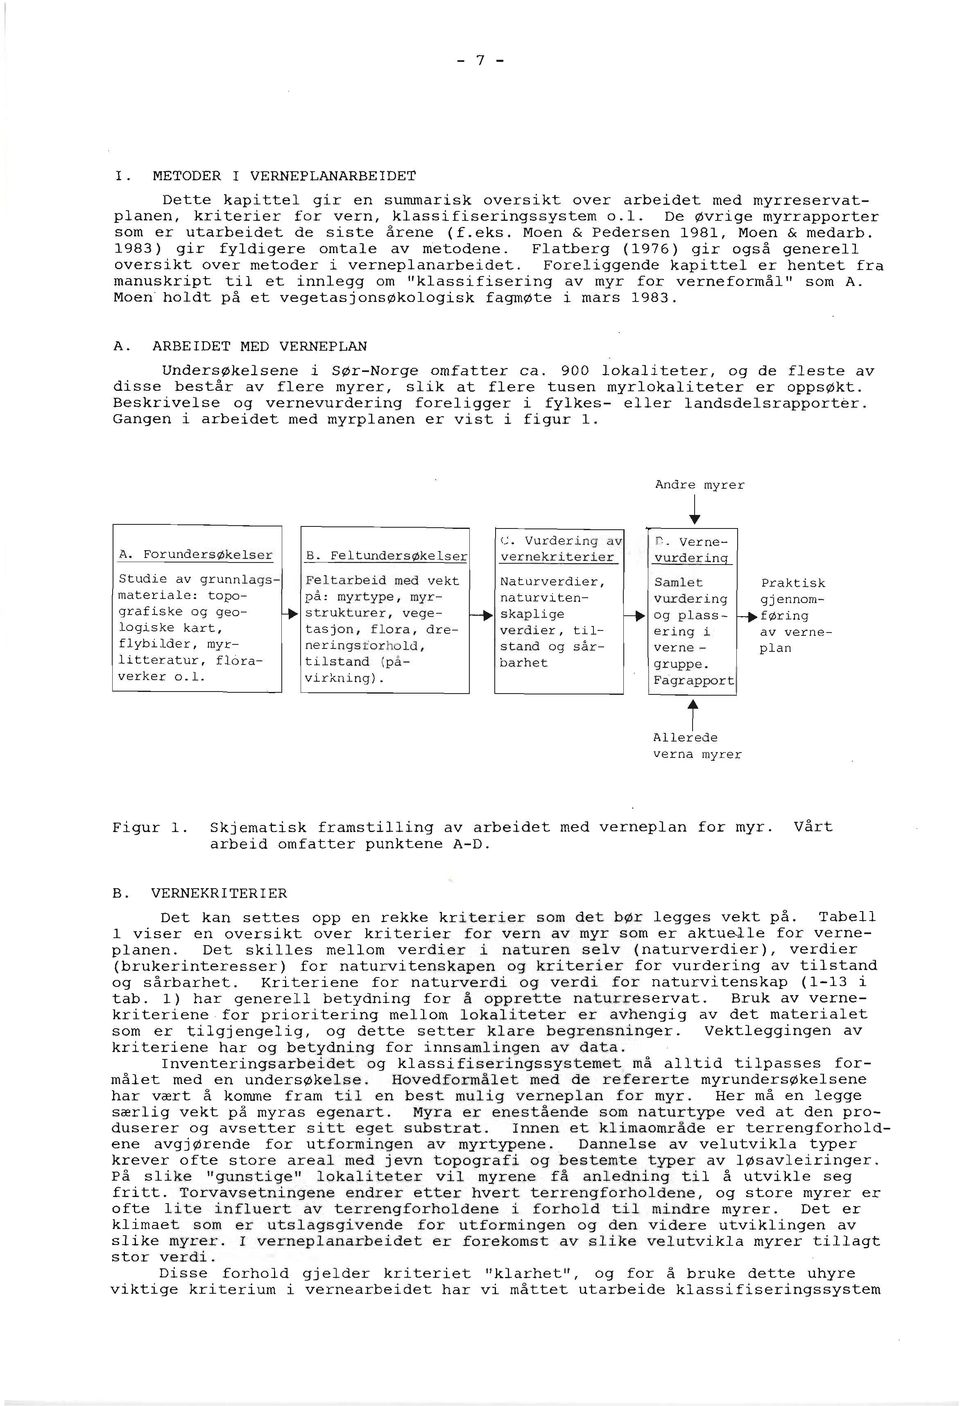 Flatberg (1976) gir også generell oversikt over metoder i verneplanarbeidet. Foreliggende kapittel er hentet fra manuskript til et innlegg om llklassifisering av myr for verneformål" som A.